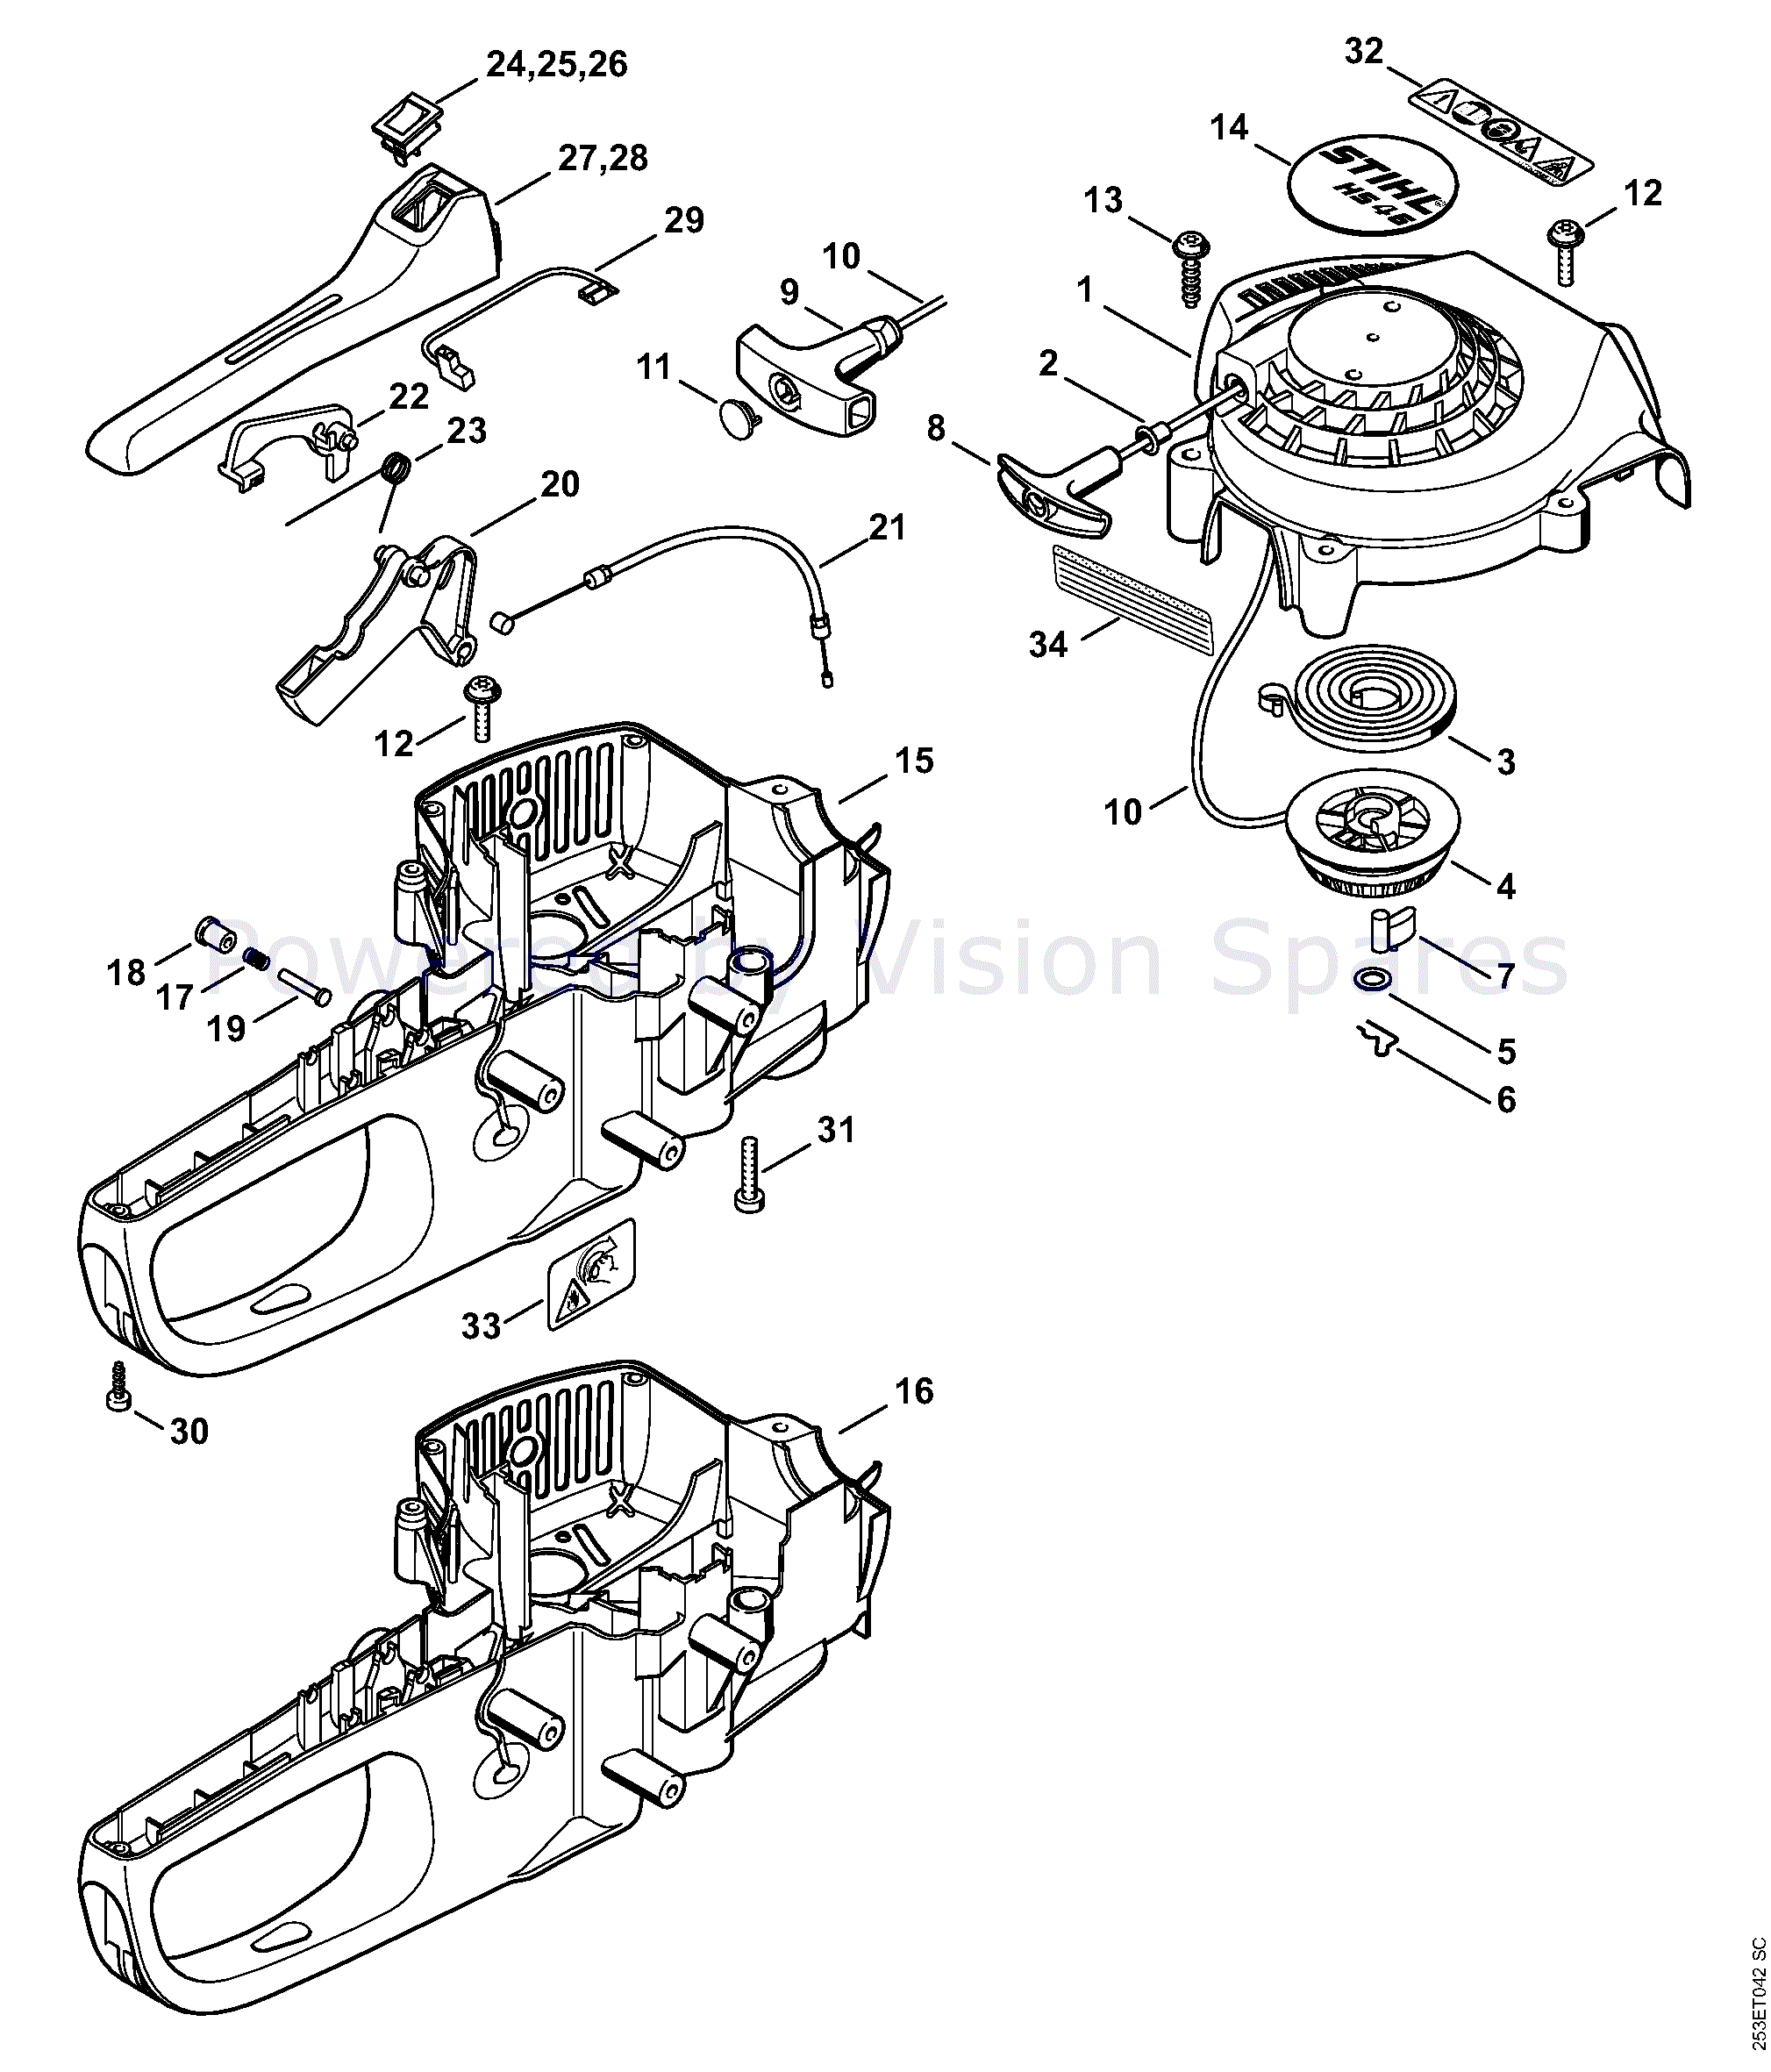 stihl hs56c parts diagram